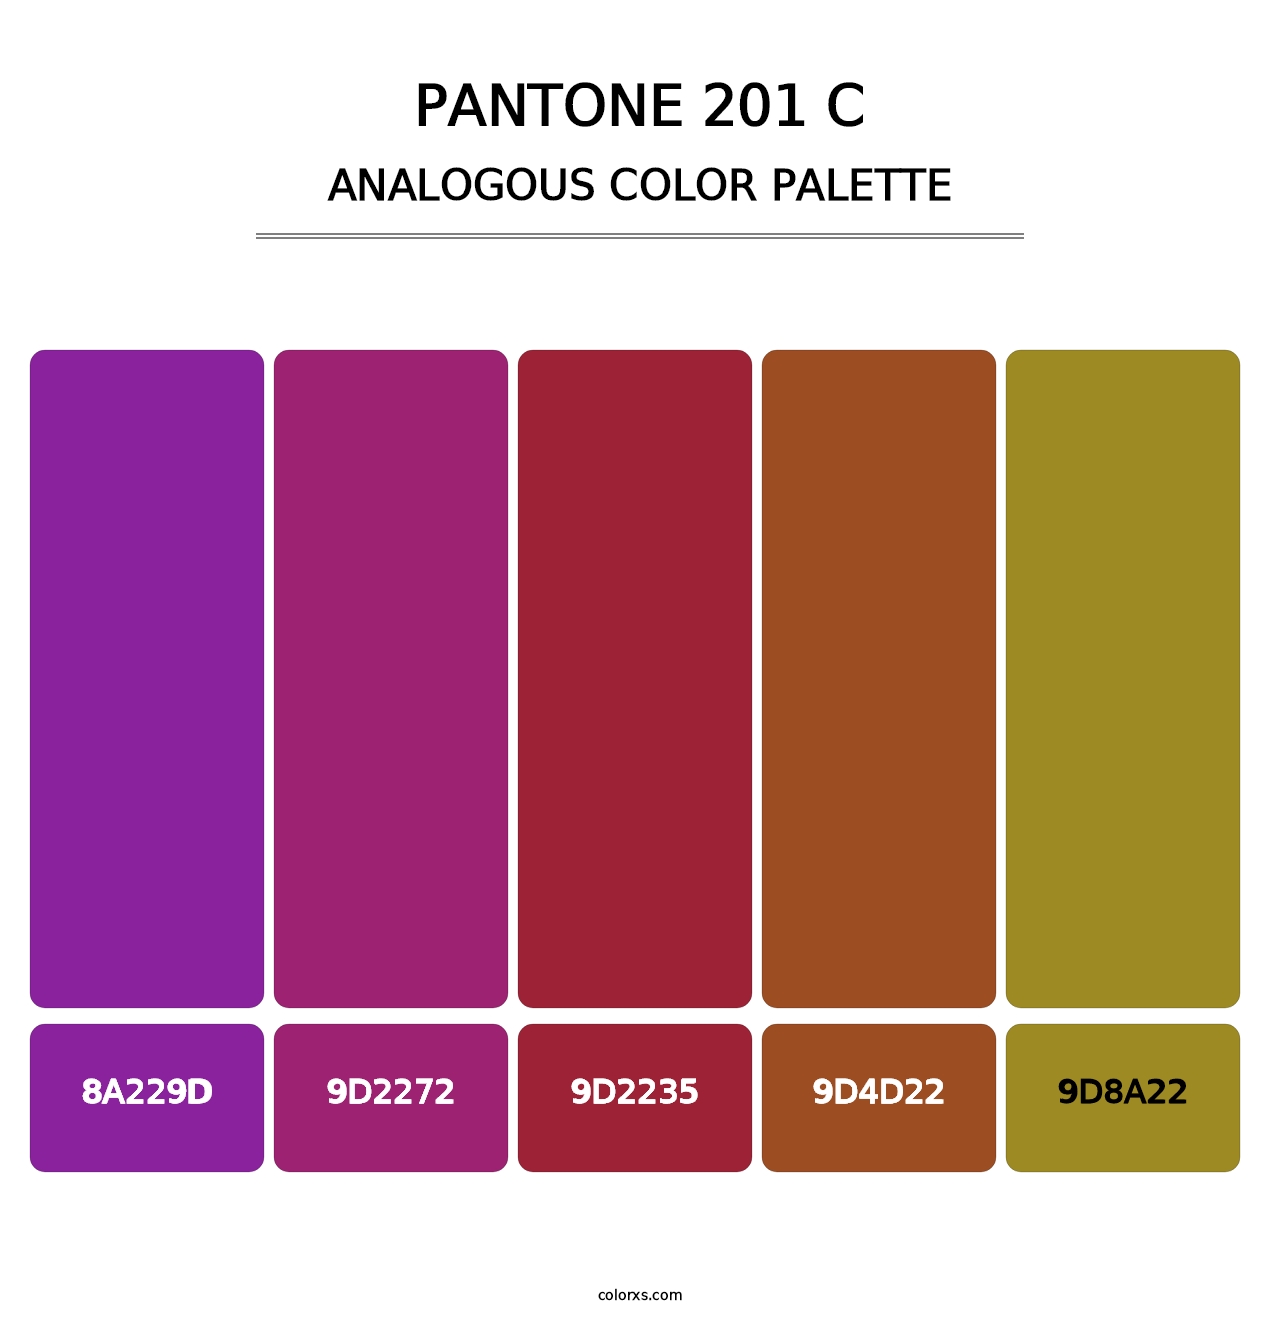 PANTONE 201 C - Analogous Color Palette